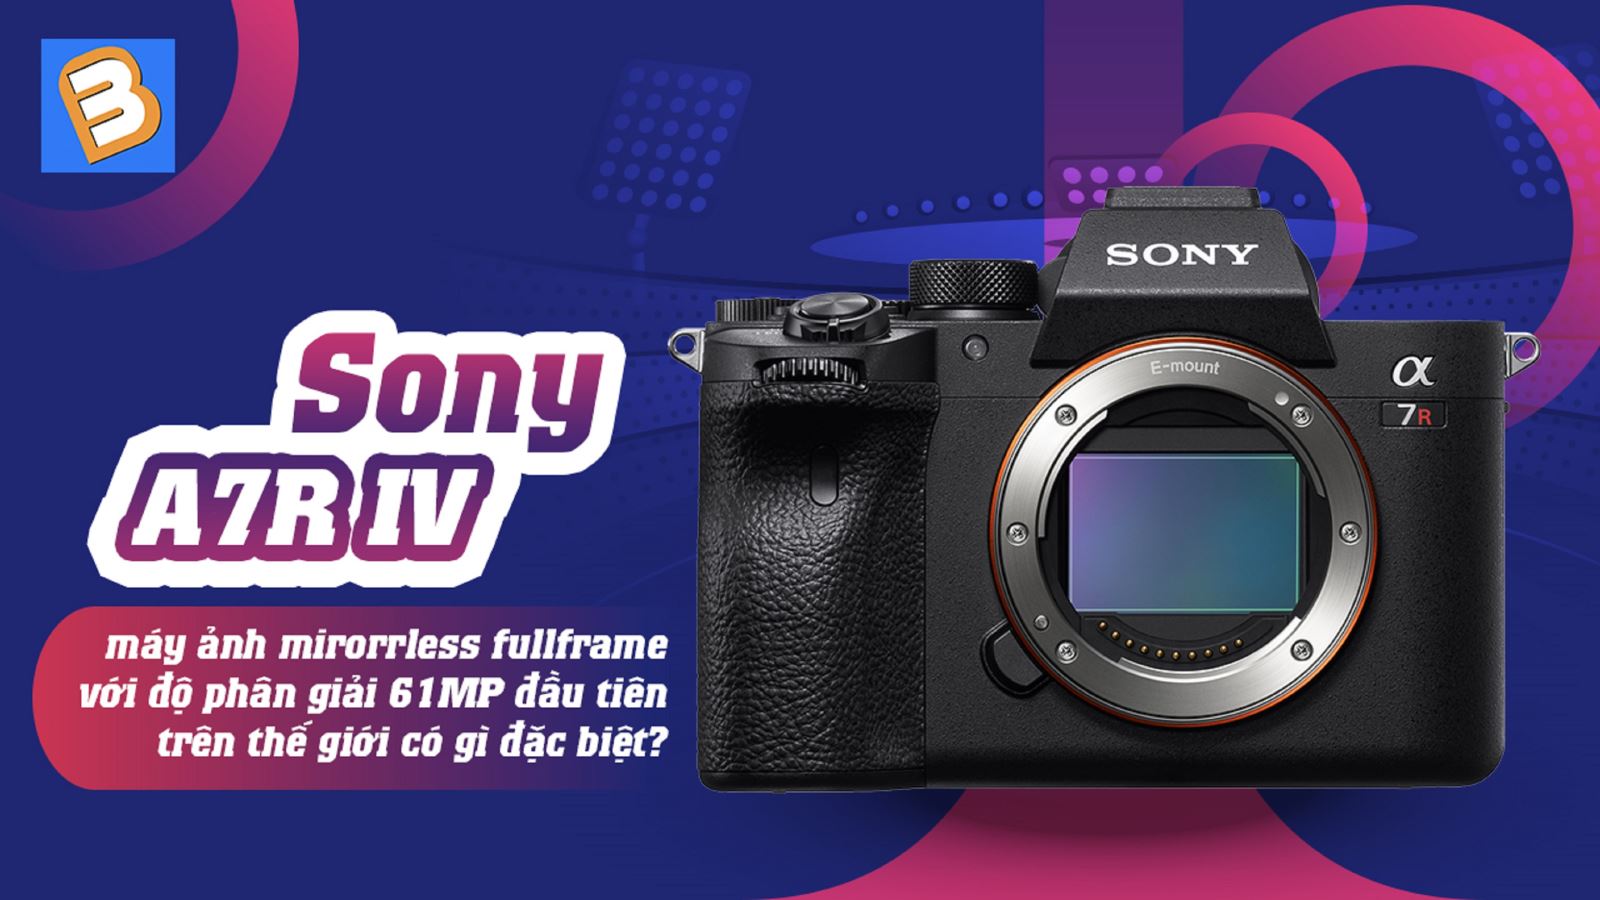 Sony A7R IV - máy ảnh mirorrless fullframe với độ phân giải 61MP đầu tiên trên thế giới có gì đặc biệt?